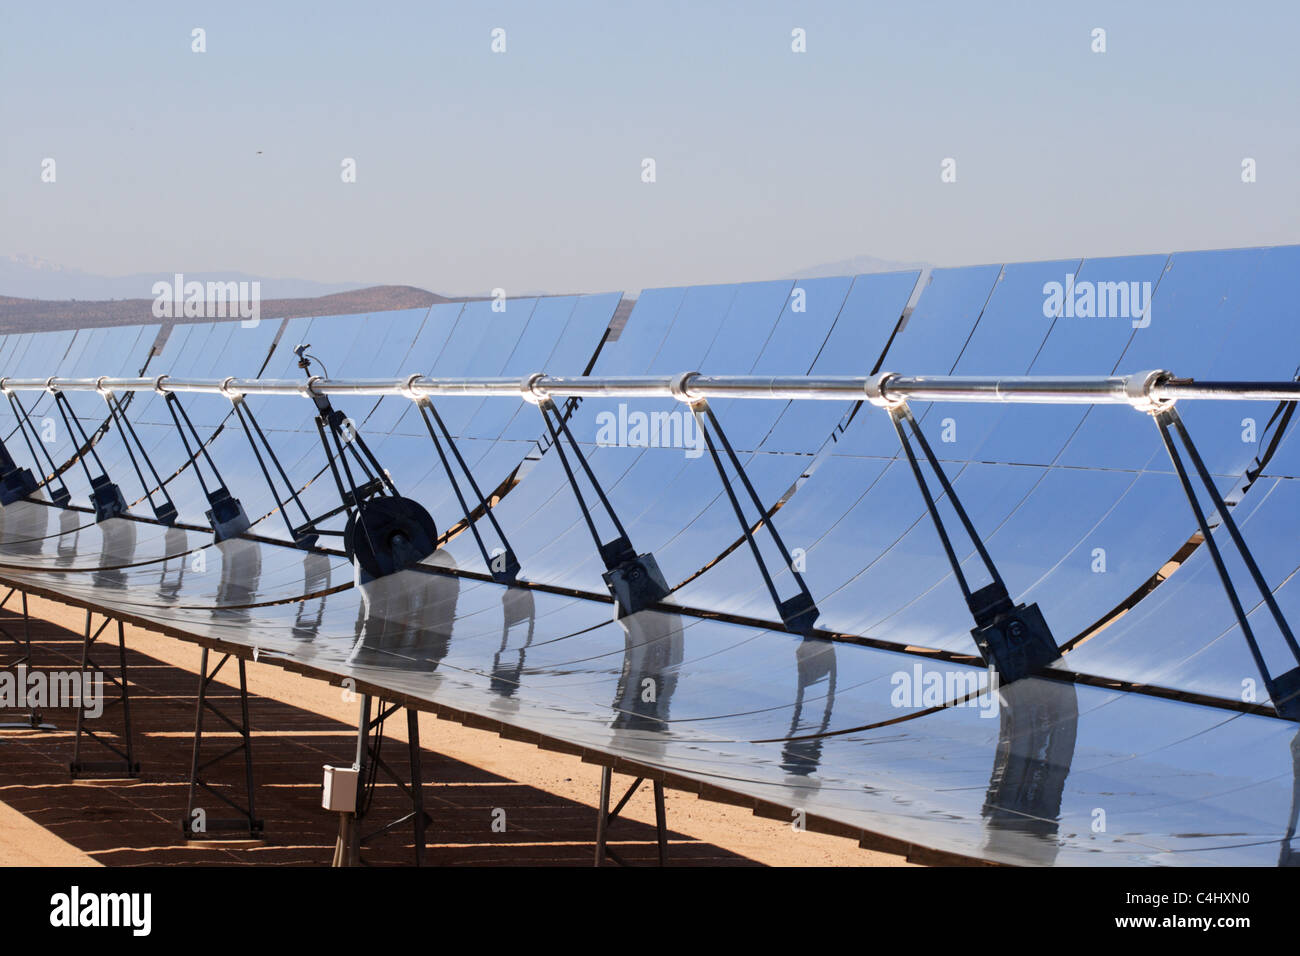 SEGS energía solar térmica planta de electricidad con espejos parabólicos concentran la luz del sol Foto de stock